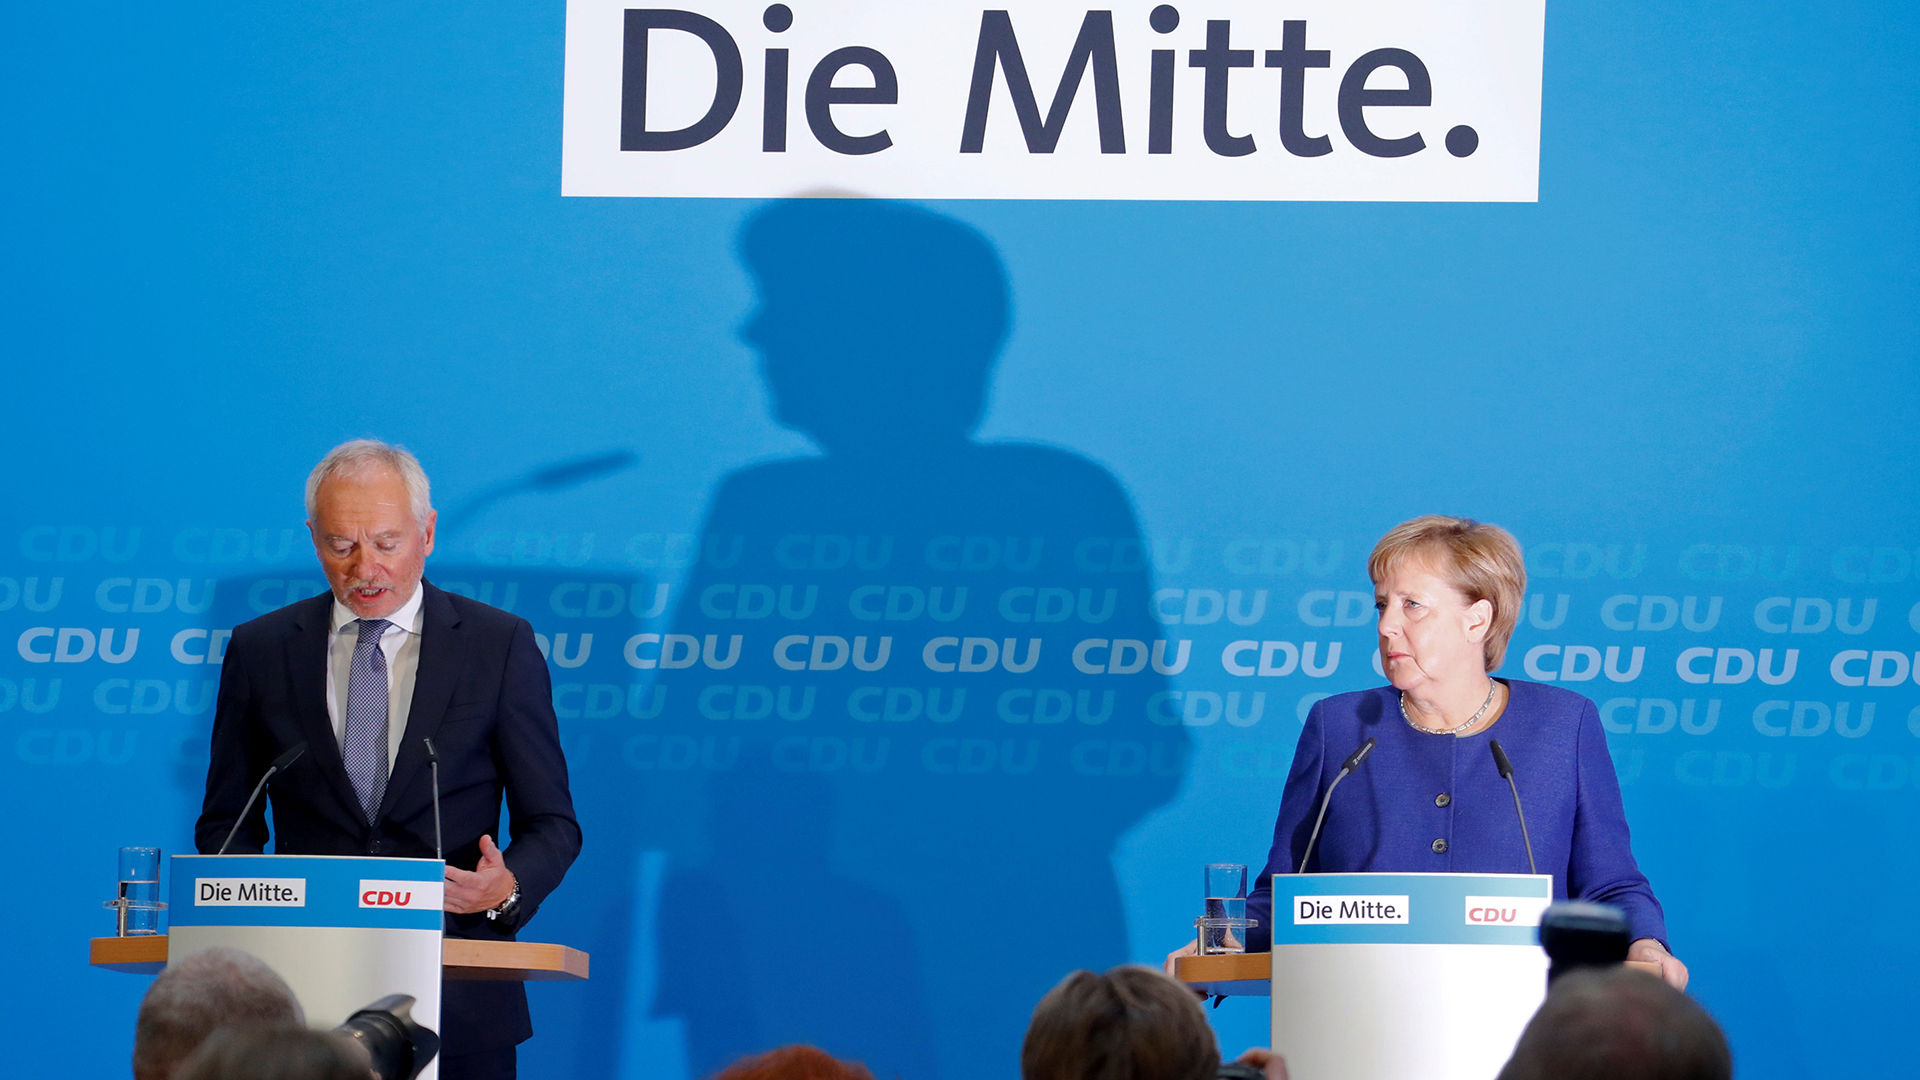 Bundeskanzlerin Angela Merkel und Klaus Schueler von der CDU veranstalten eine Pressekonferenz im Anschluss an ein Führungstreffen der Christdemokratischen Union. | Bildquelle: REUTERS